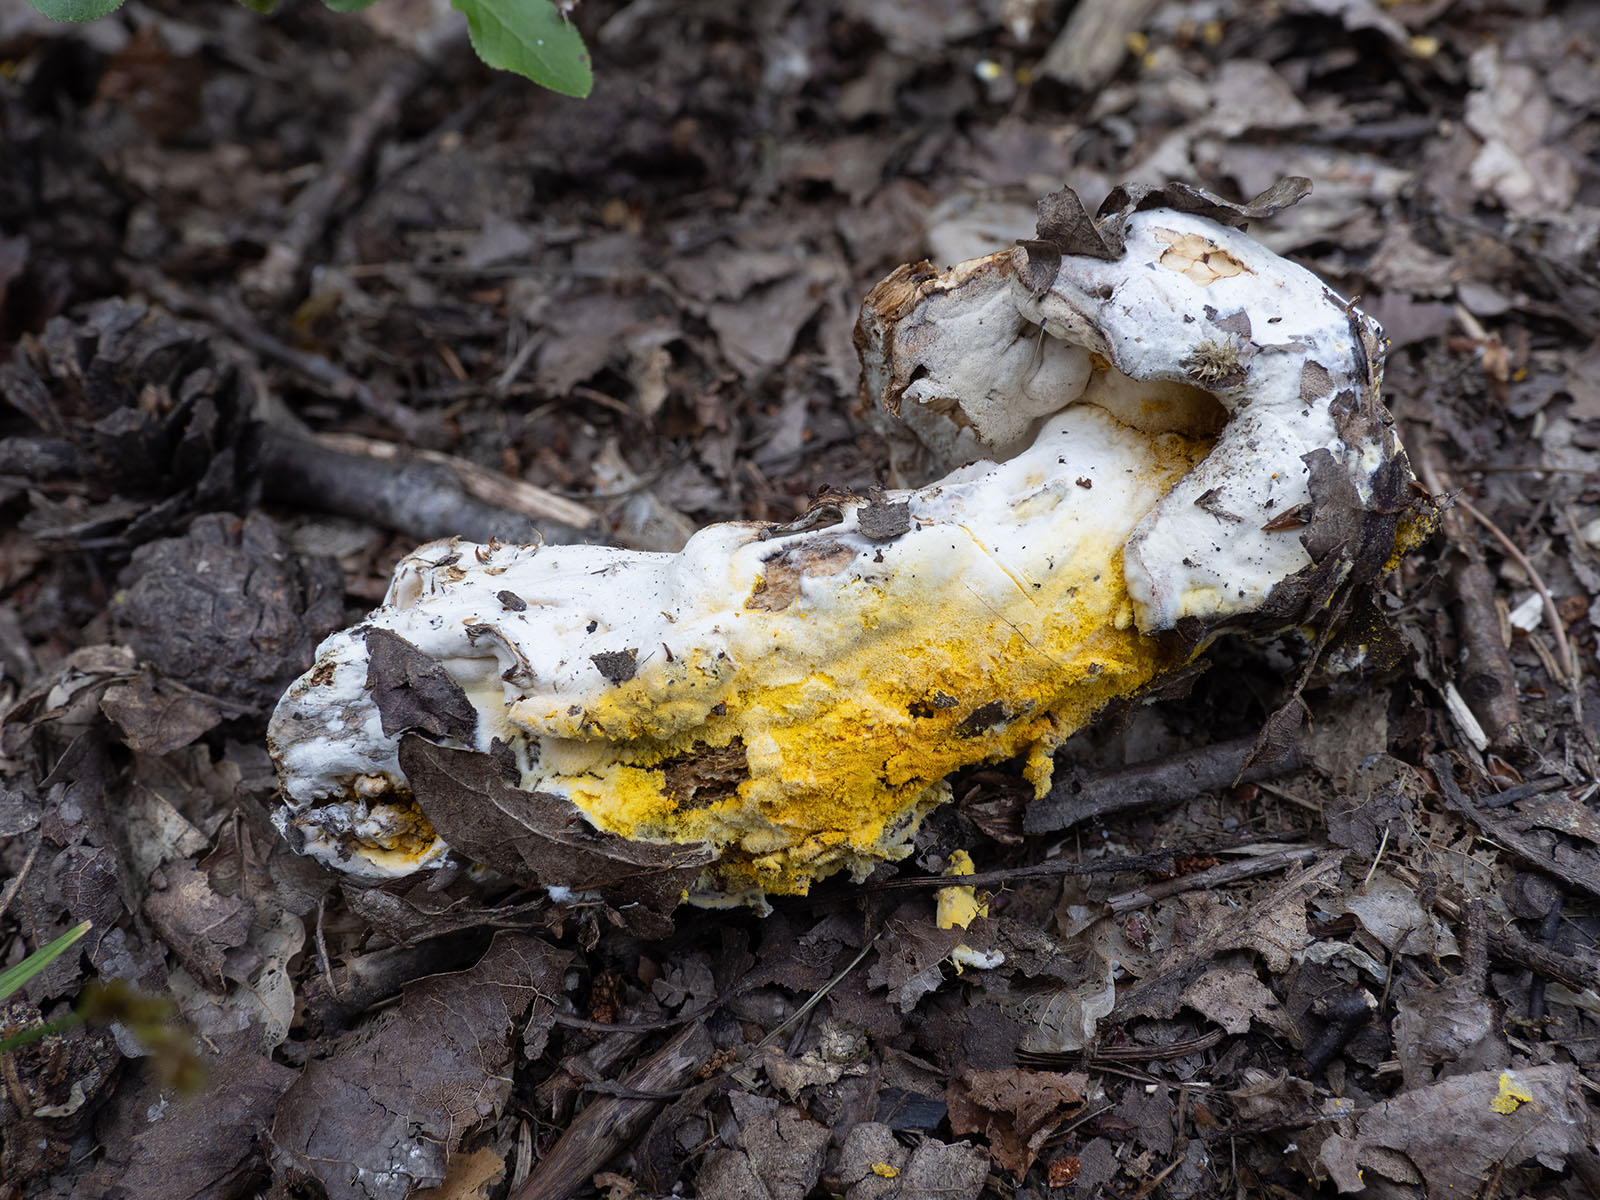 Гипомицес золотистоспоровый (Hypomyces chrysospermus), природный парк G?rv?ln, июль 2020 года. Автор фото: Сутормина Марина